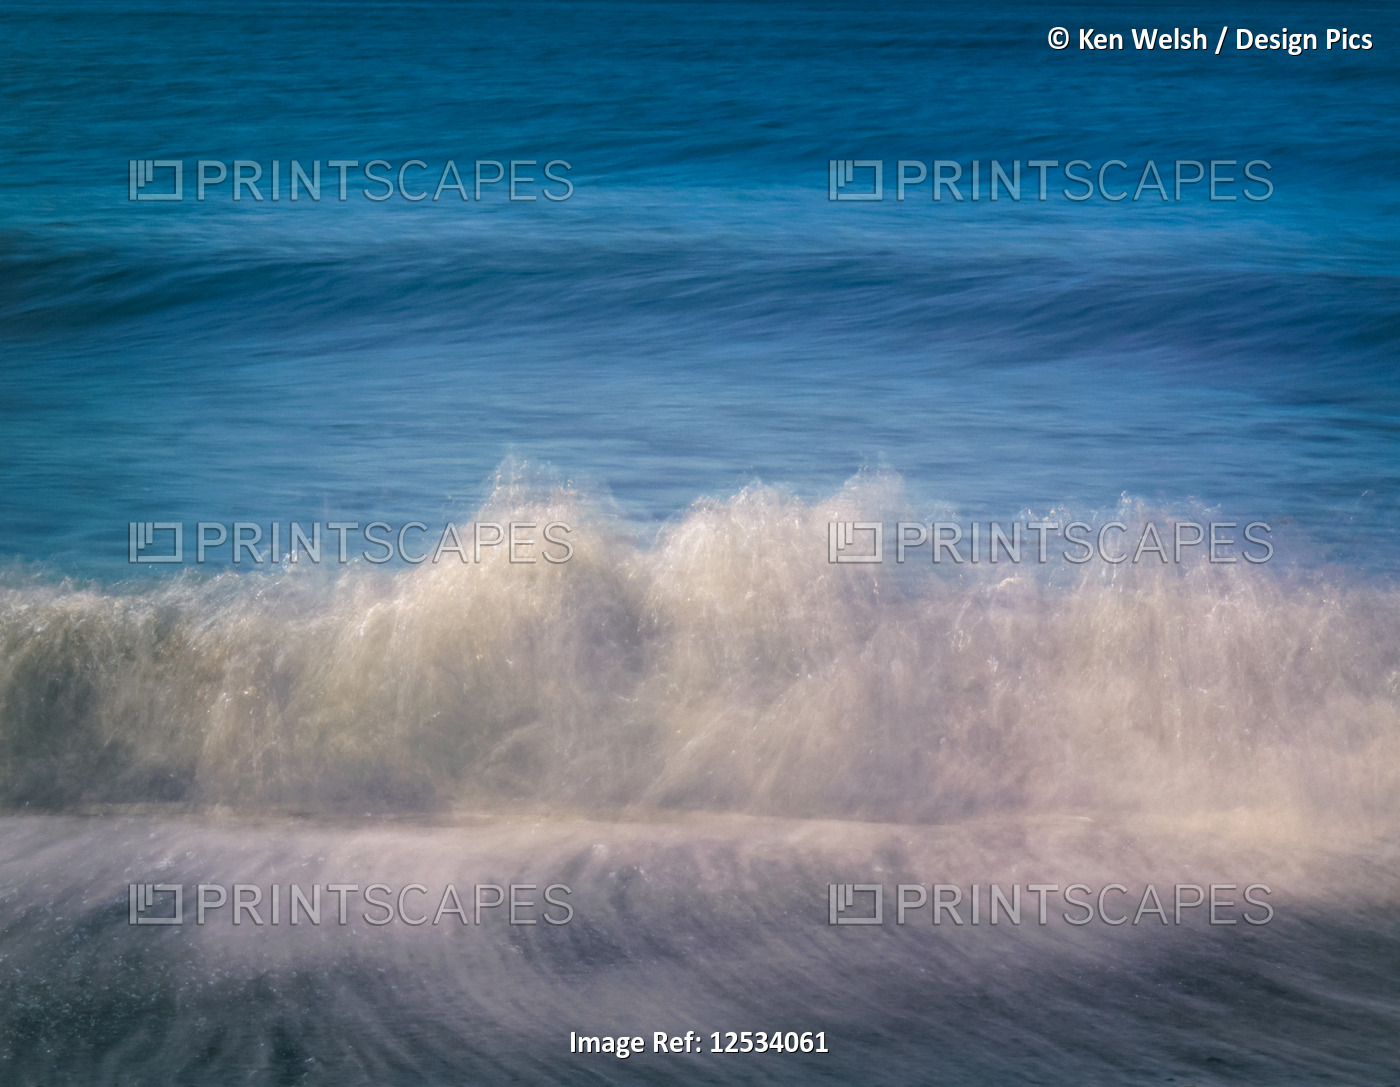 Seascape.  Waves breaking on shore.